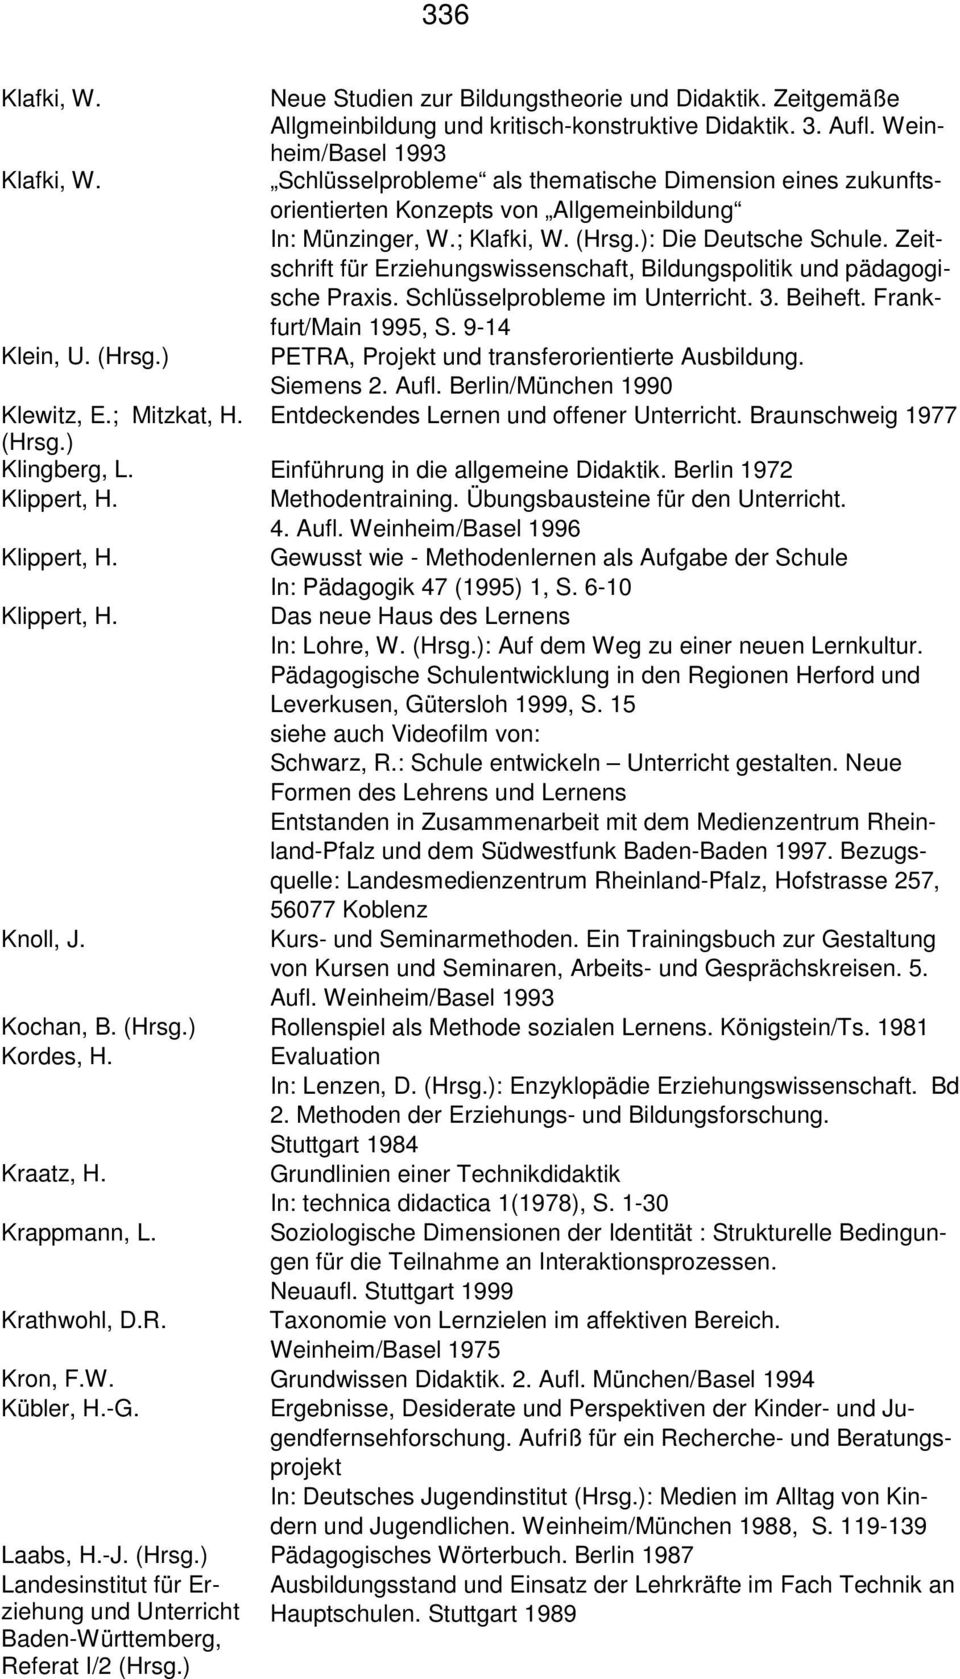 Zeitschrift für Erziehungswissenschaft, Bildungspolitik und pädagogische Praxis. Schlüsselprobleme im Unterricht. 3. Beiheft. Frankfurt/Main 1995, S. 9-14 Klein, U. (Hrsg.